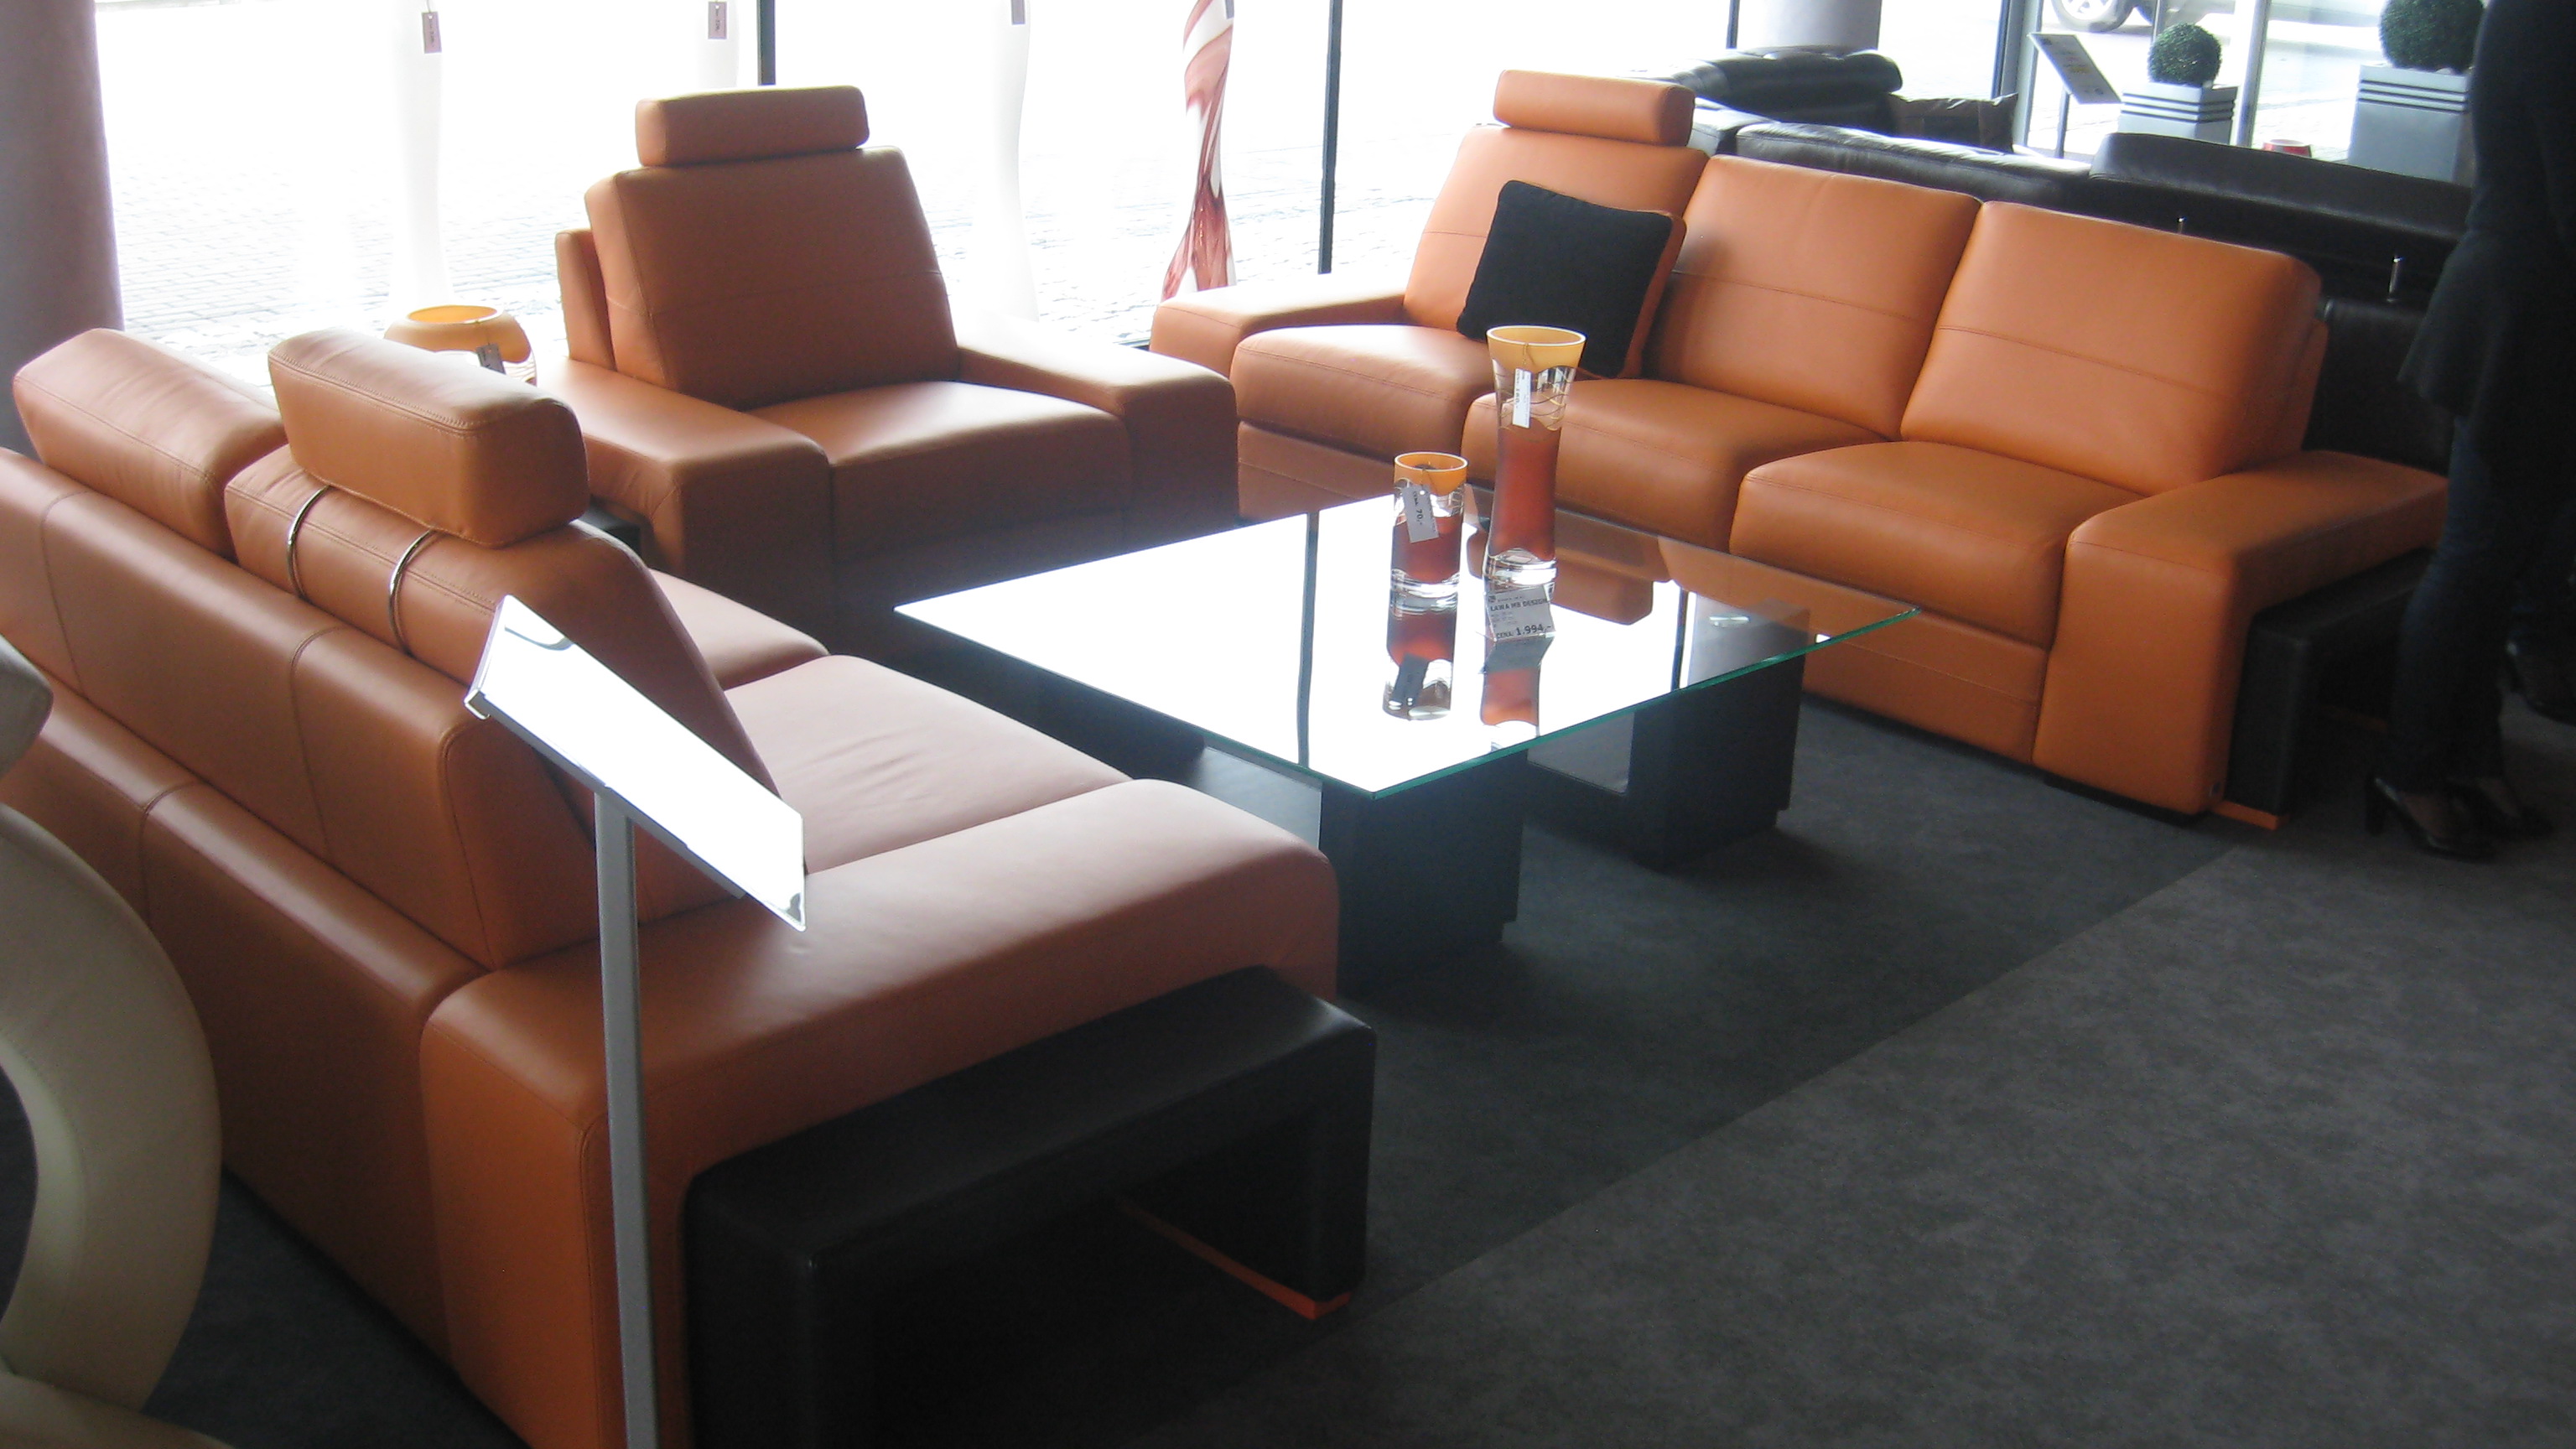 Útulný světlý obývací pokoj z pískových odstínů s pohodlným modulárním systémem